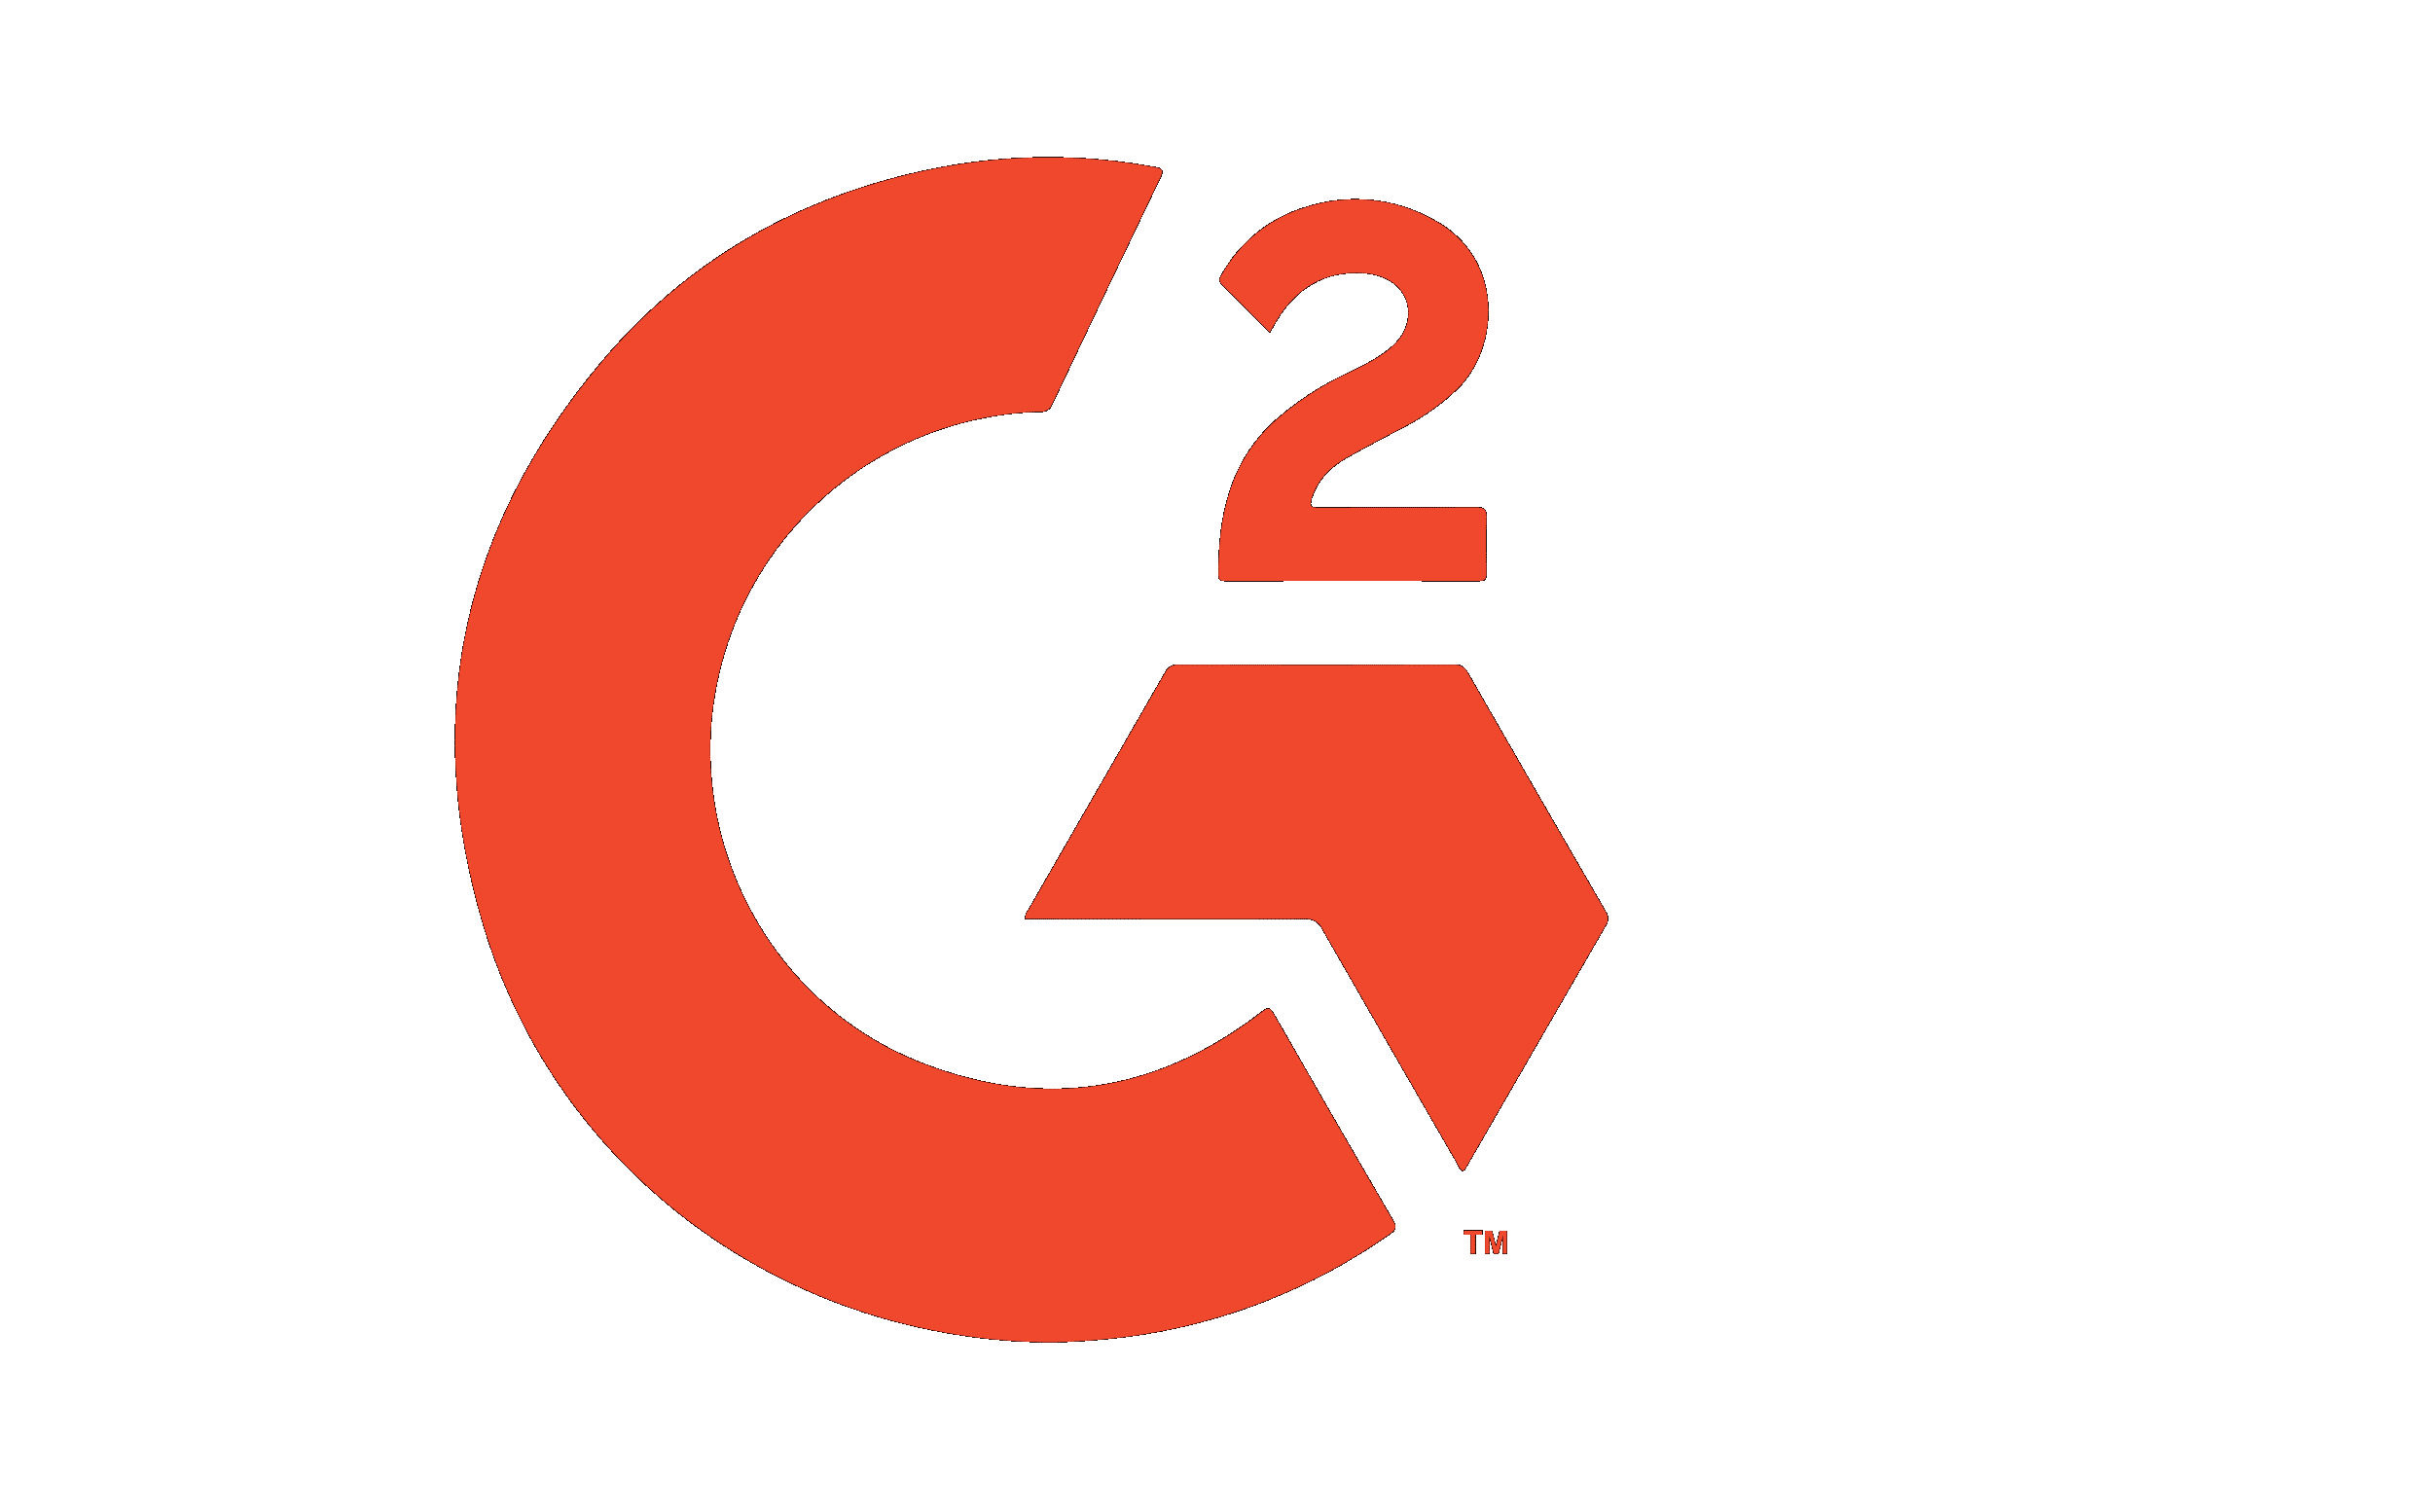 G2 logog